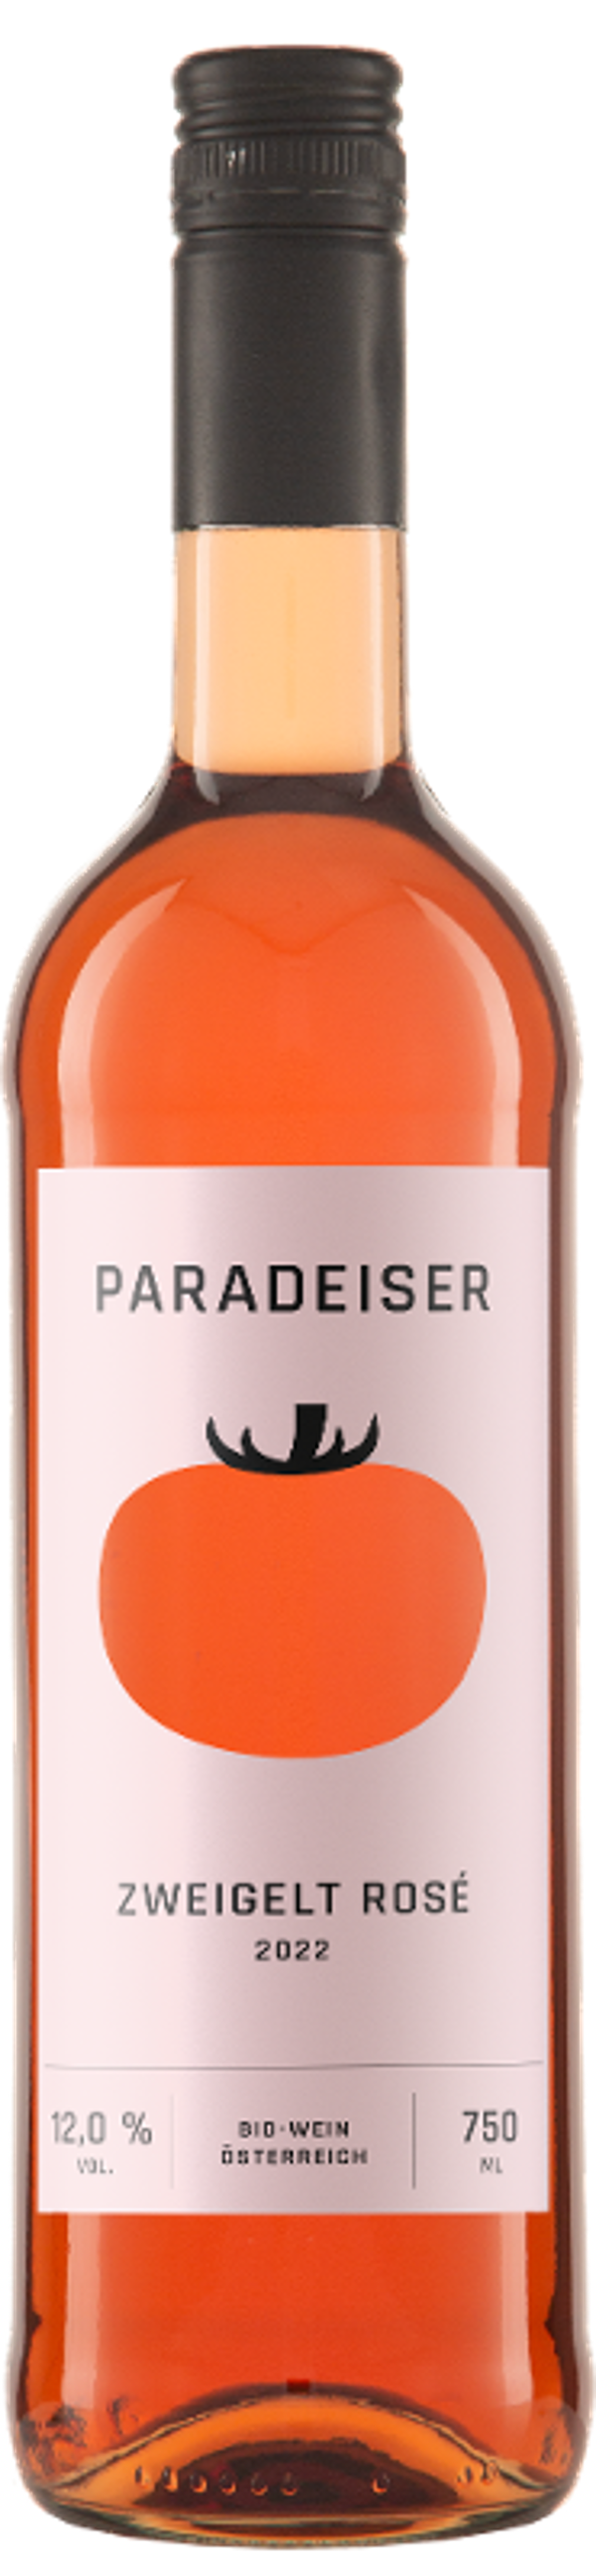 Produktfoto zu Kiste Zweigelt Rosé "Paradeiser" 6*0,75l